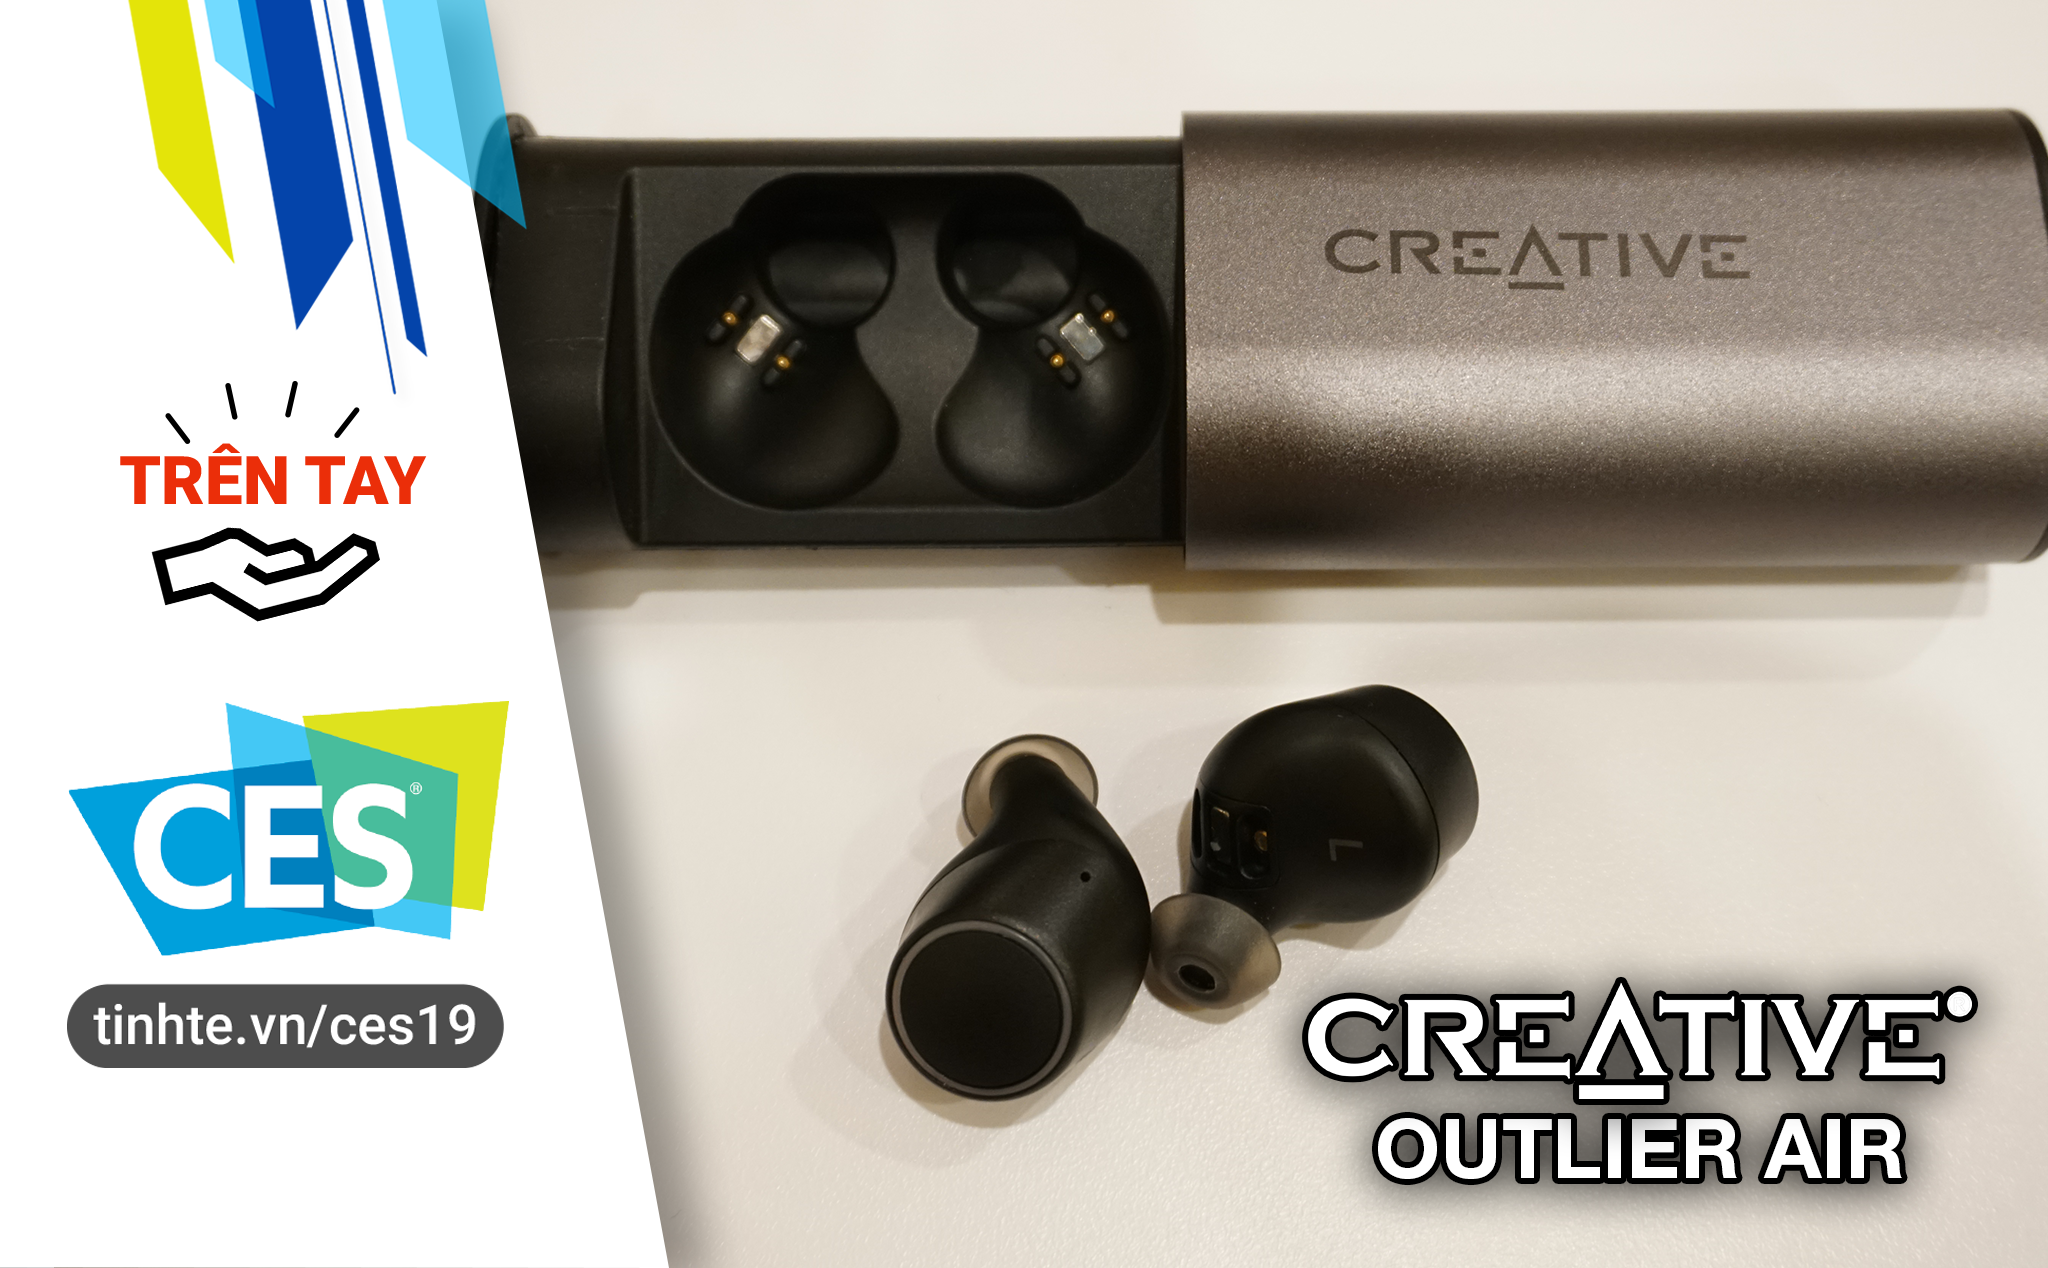 #CES19: Trên tay Creative Outlier Air - tai nghe true-wireless màn loa Graphene, pin 10h, giá 79$